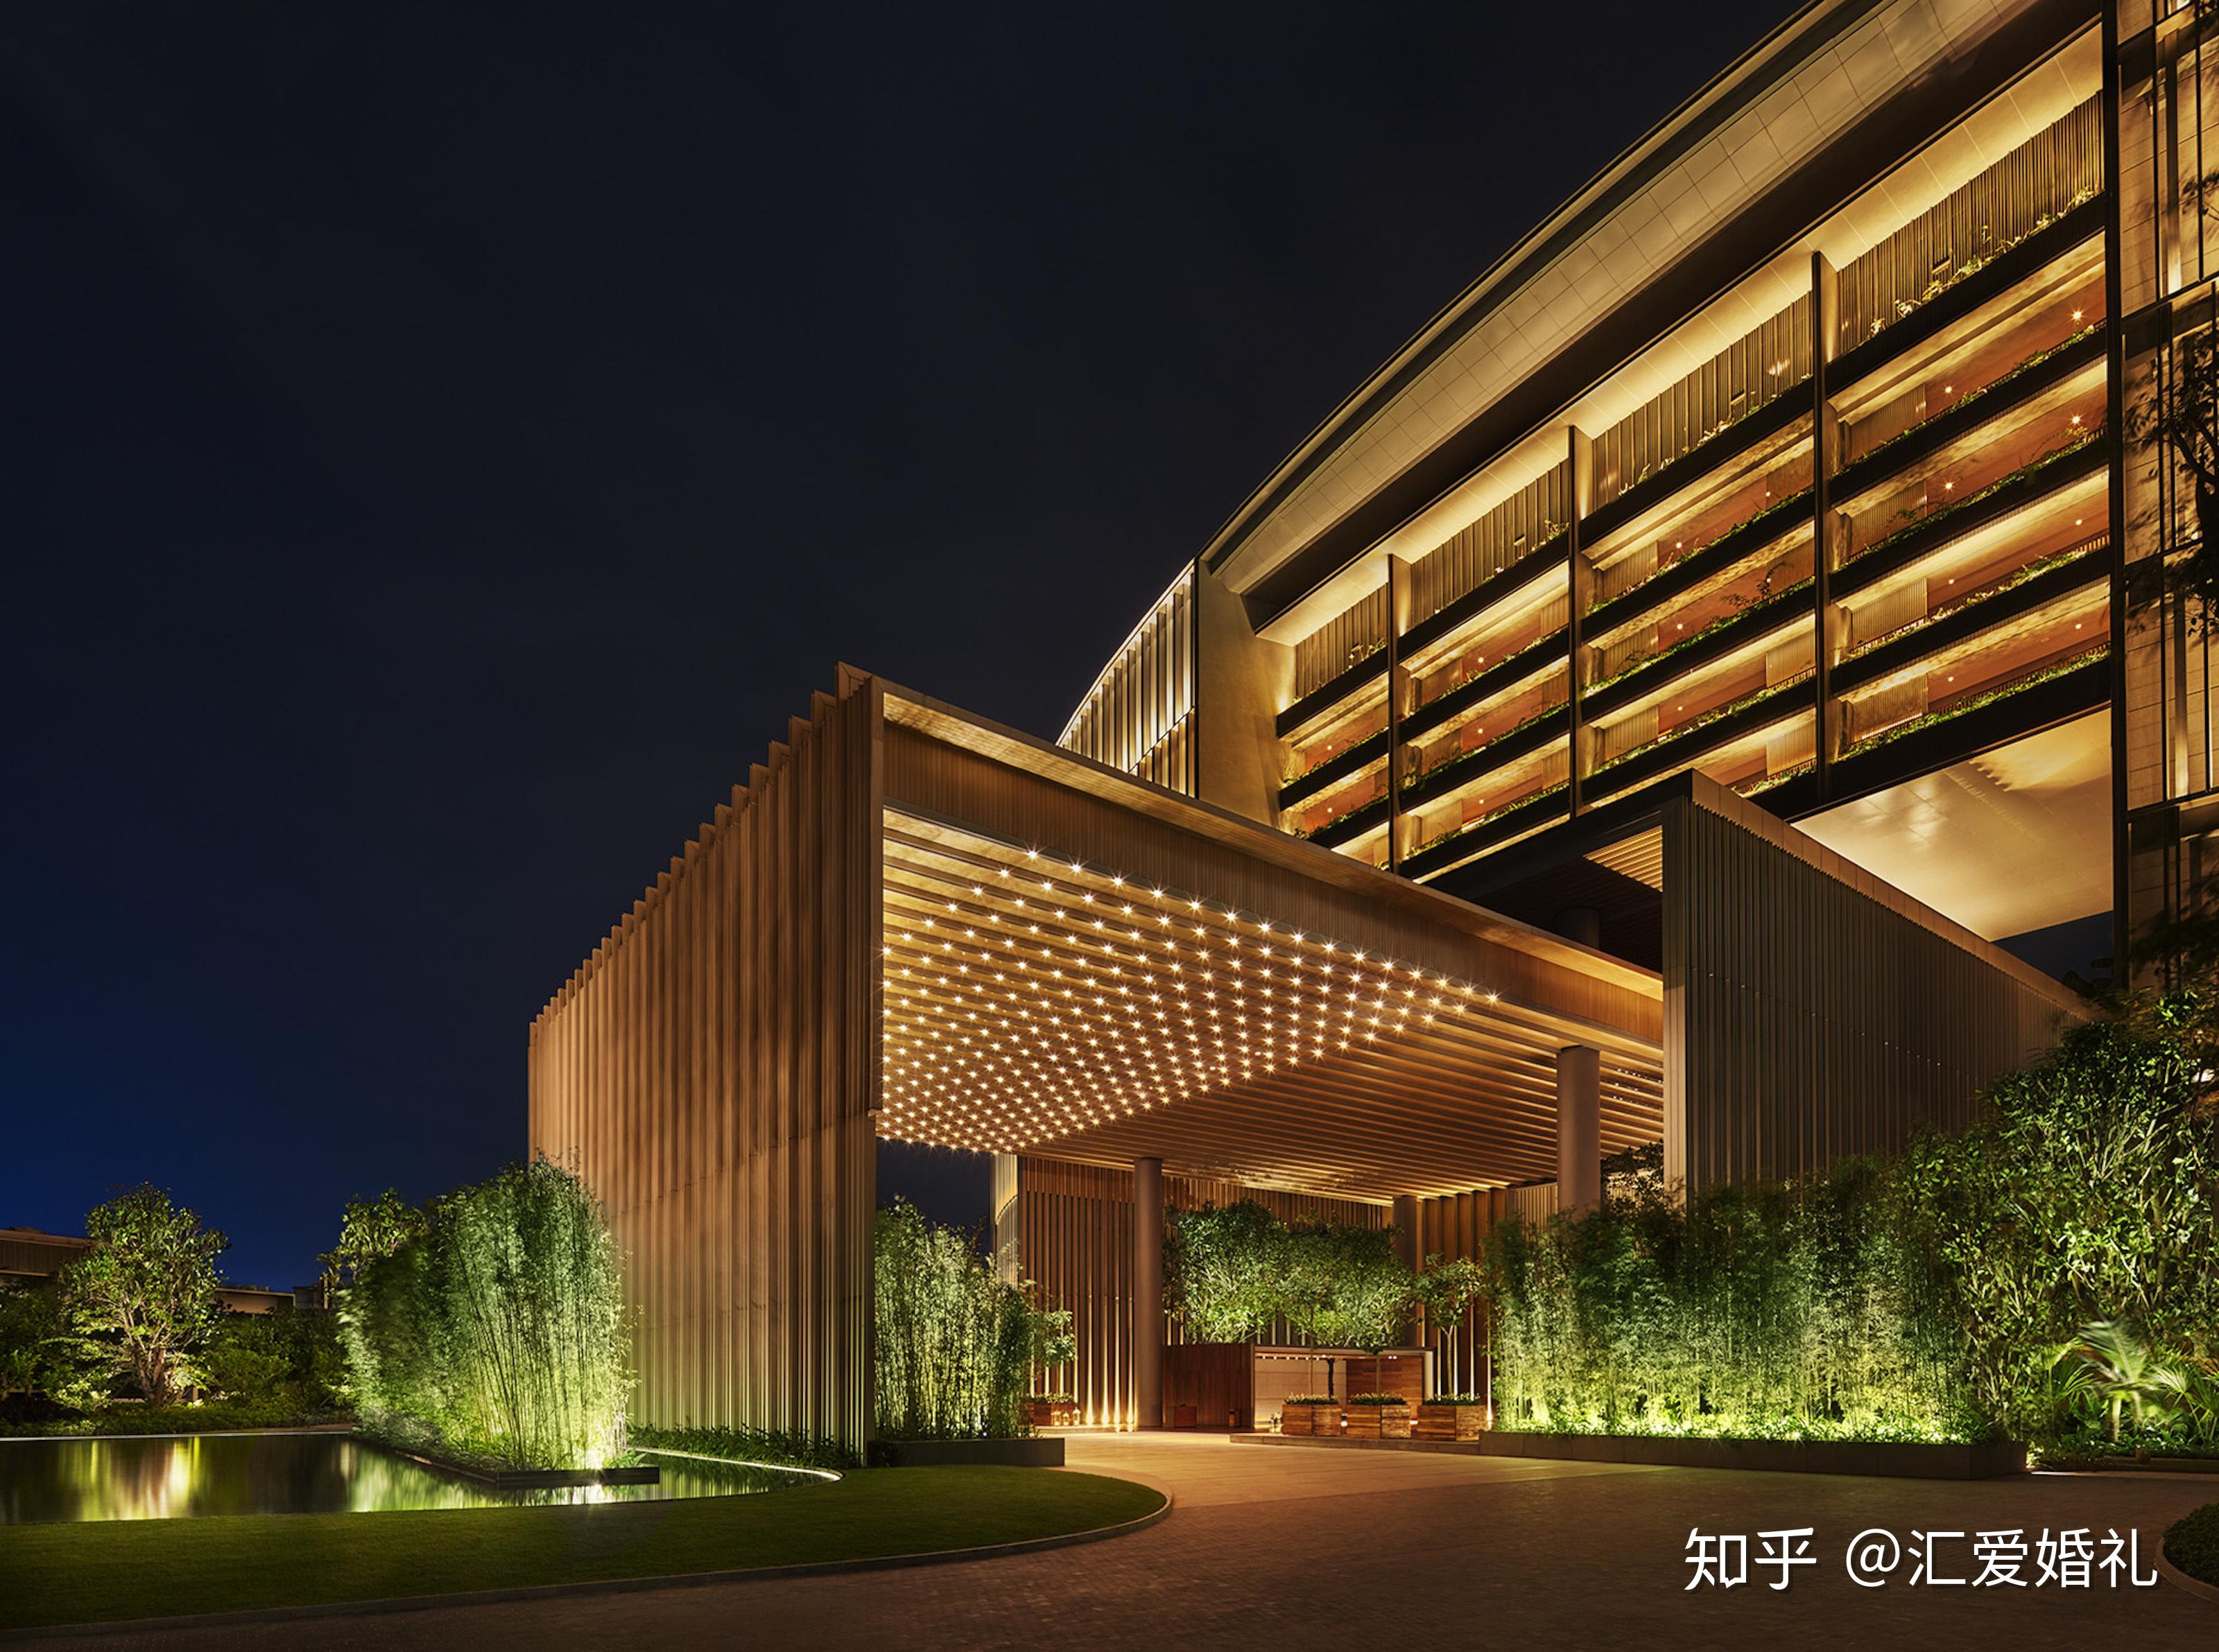 三亚美丽之冠七星级酒店大树造型成就海南地标性建筑_海南频道_凤凰网